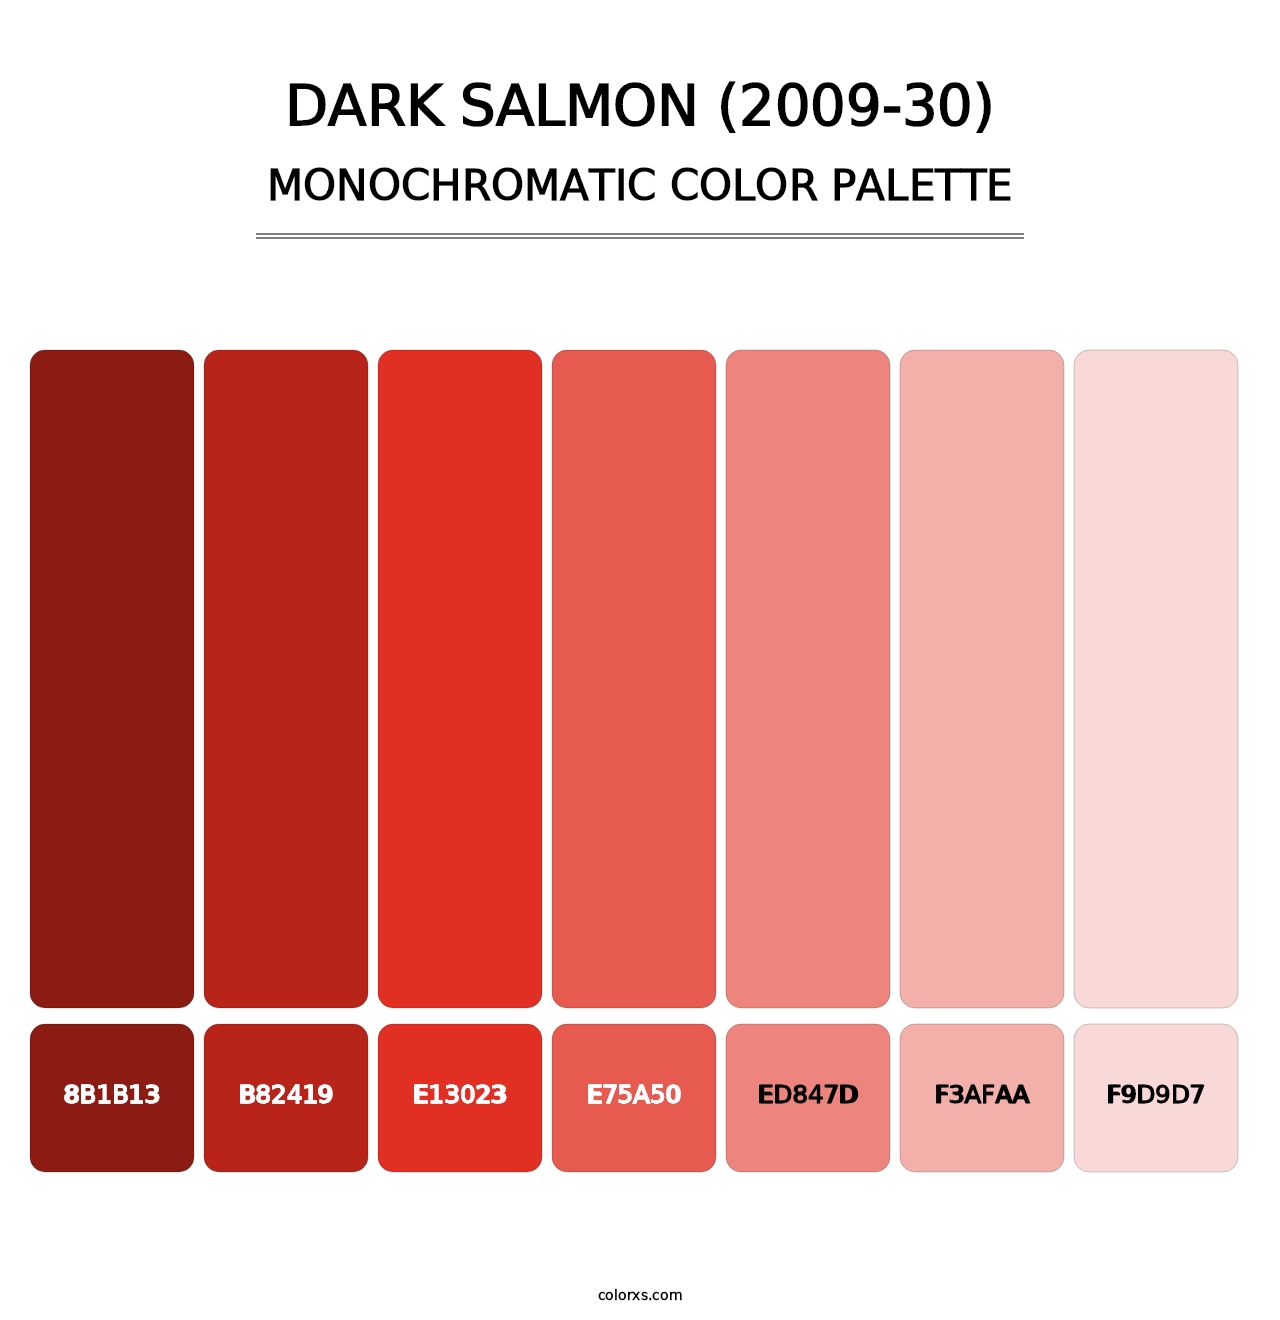 Dark Salmon (2009-30) - Monochromatic Color Palette